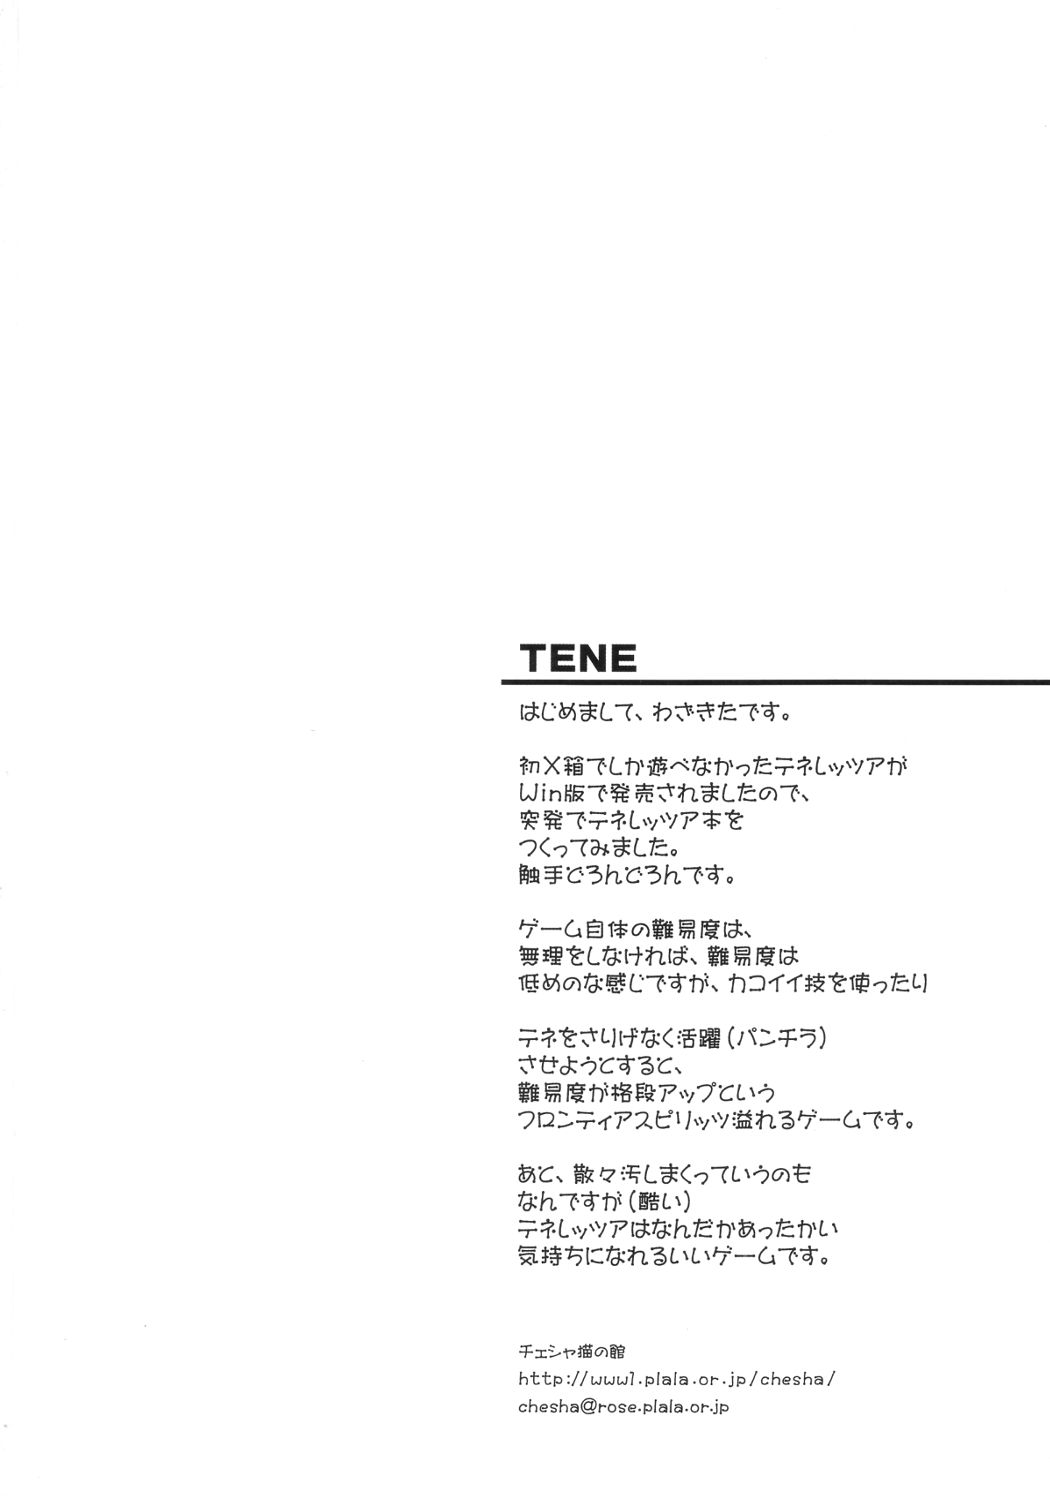 [チェシャ猫の館 (わざきた)] TeNe (テネレッツァ)